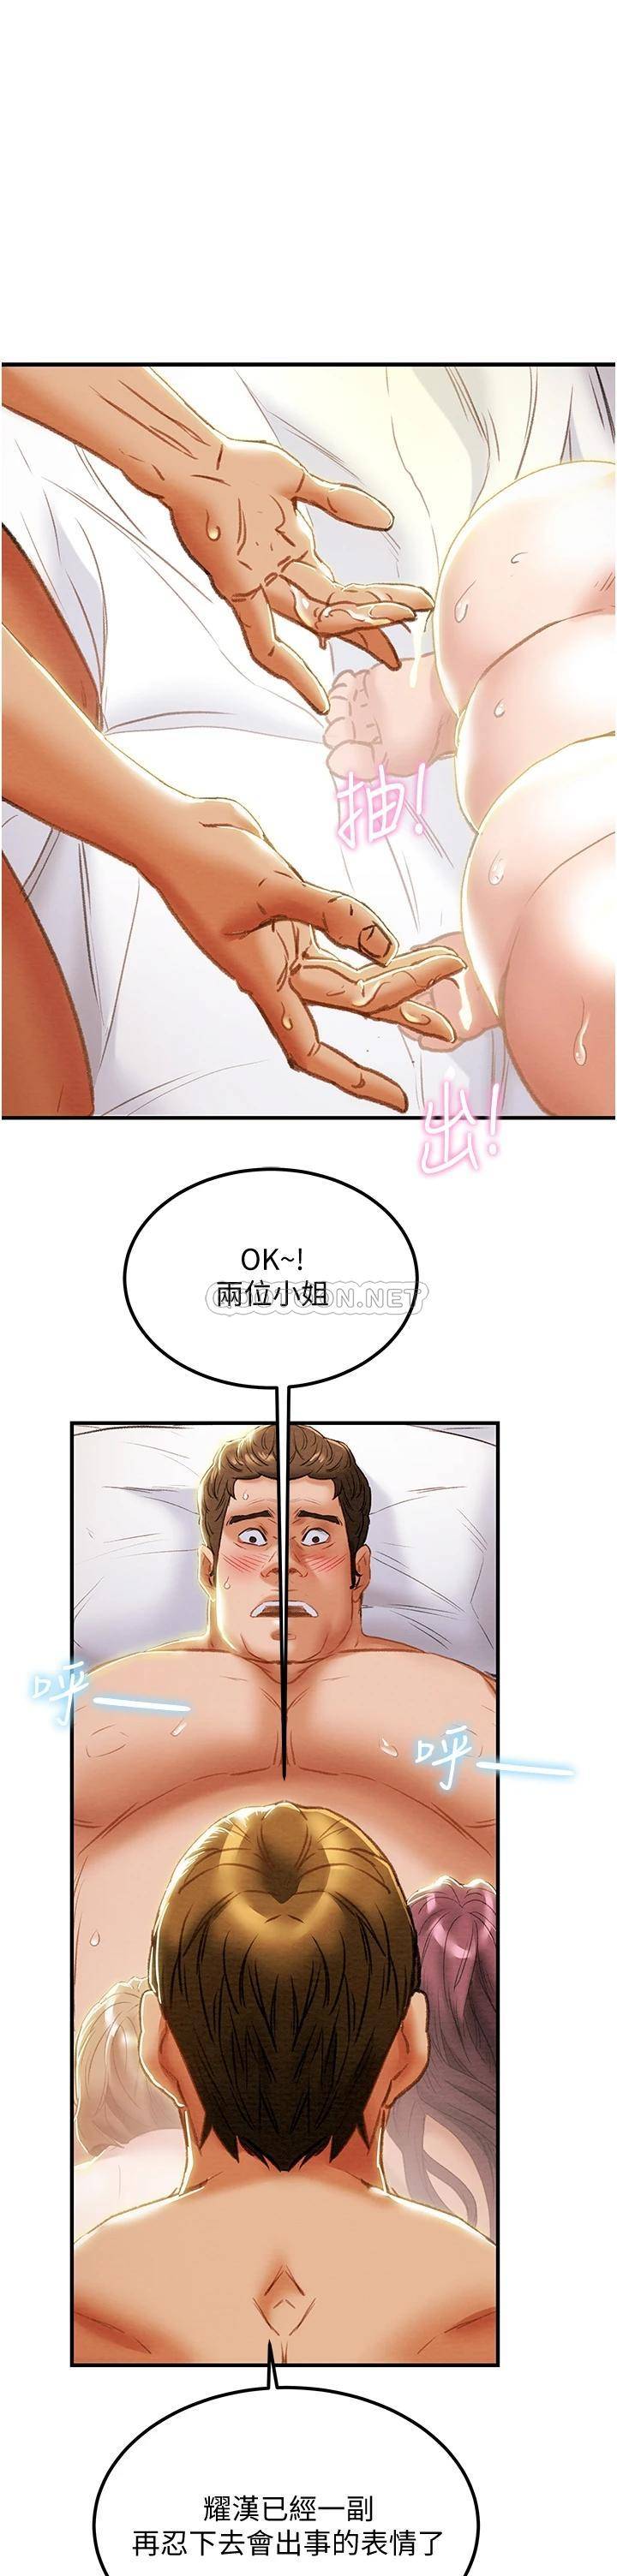 韩国污漫画 純情女攻略計劃 第58话带来新刺激的疯狂性爱 27